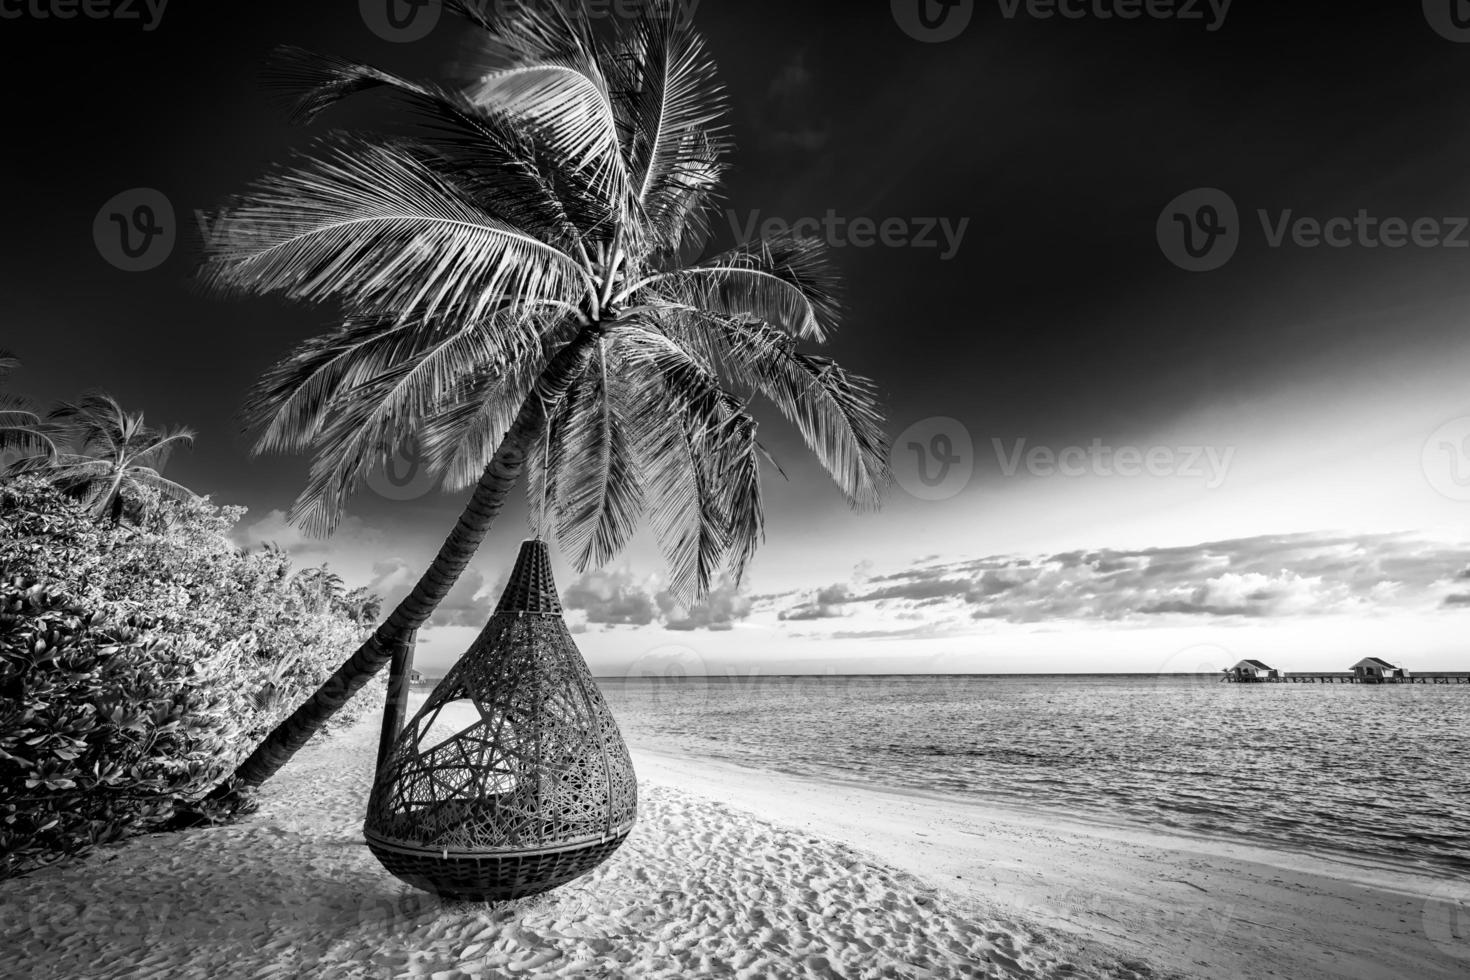 processus de nature minimaliste tranquille en noir et blanc. plage artistique palmiers ciel sombre, lumière du soleil. motif de fond de voyage monochrome abstrait. cocotiers été sombre dramatique méditation énergie photo